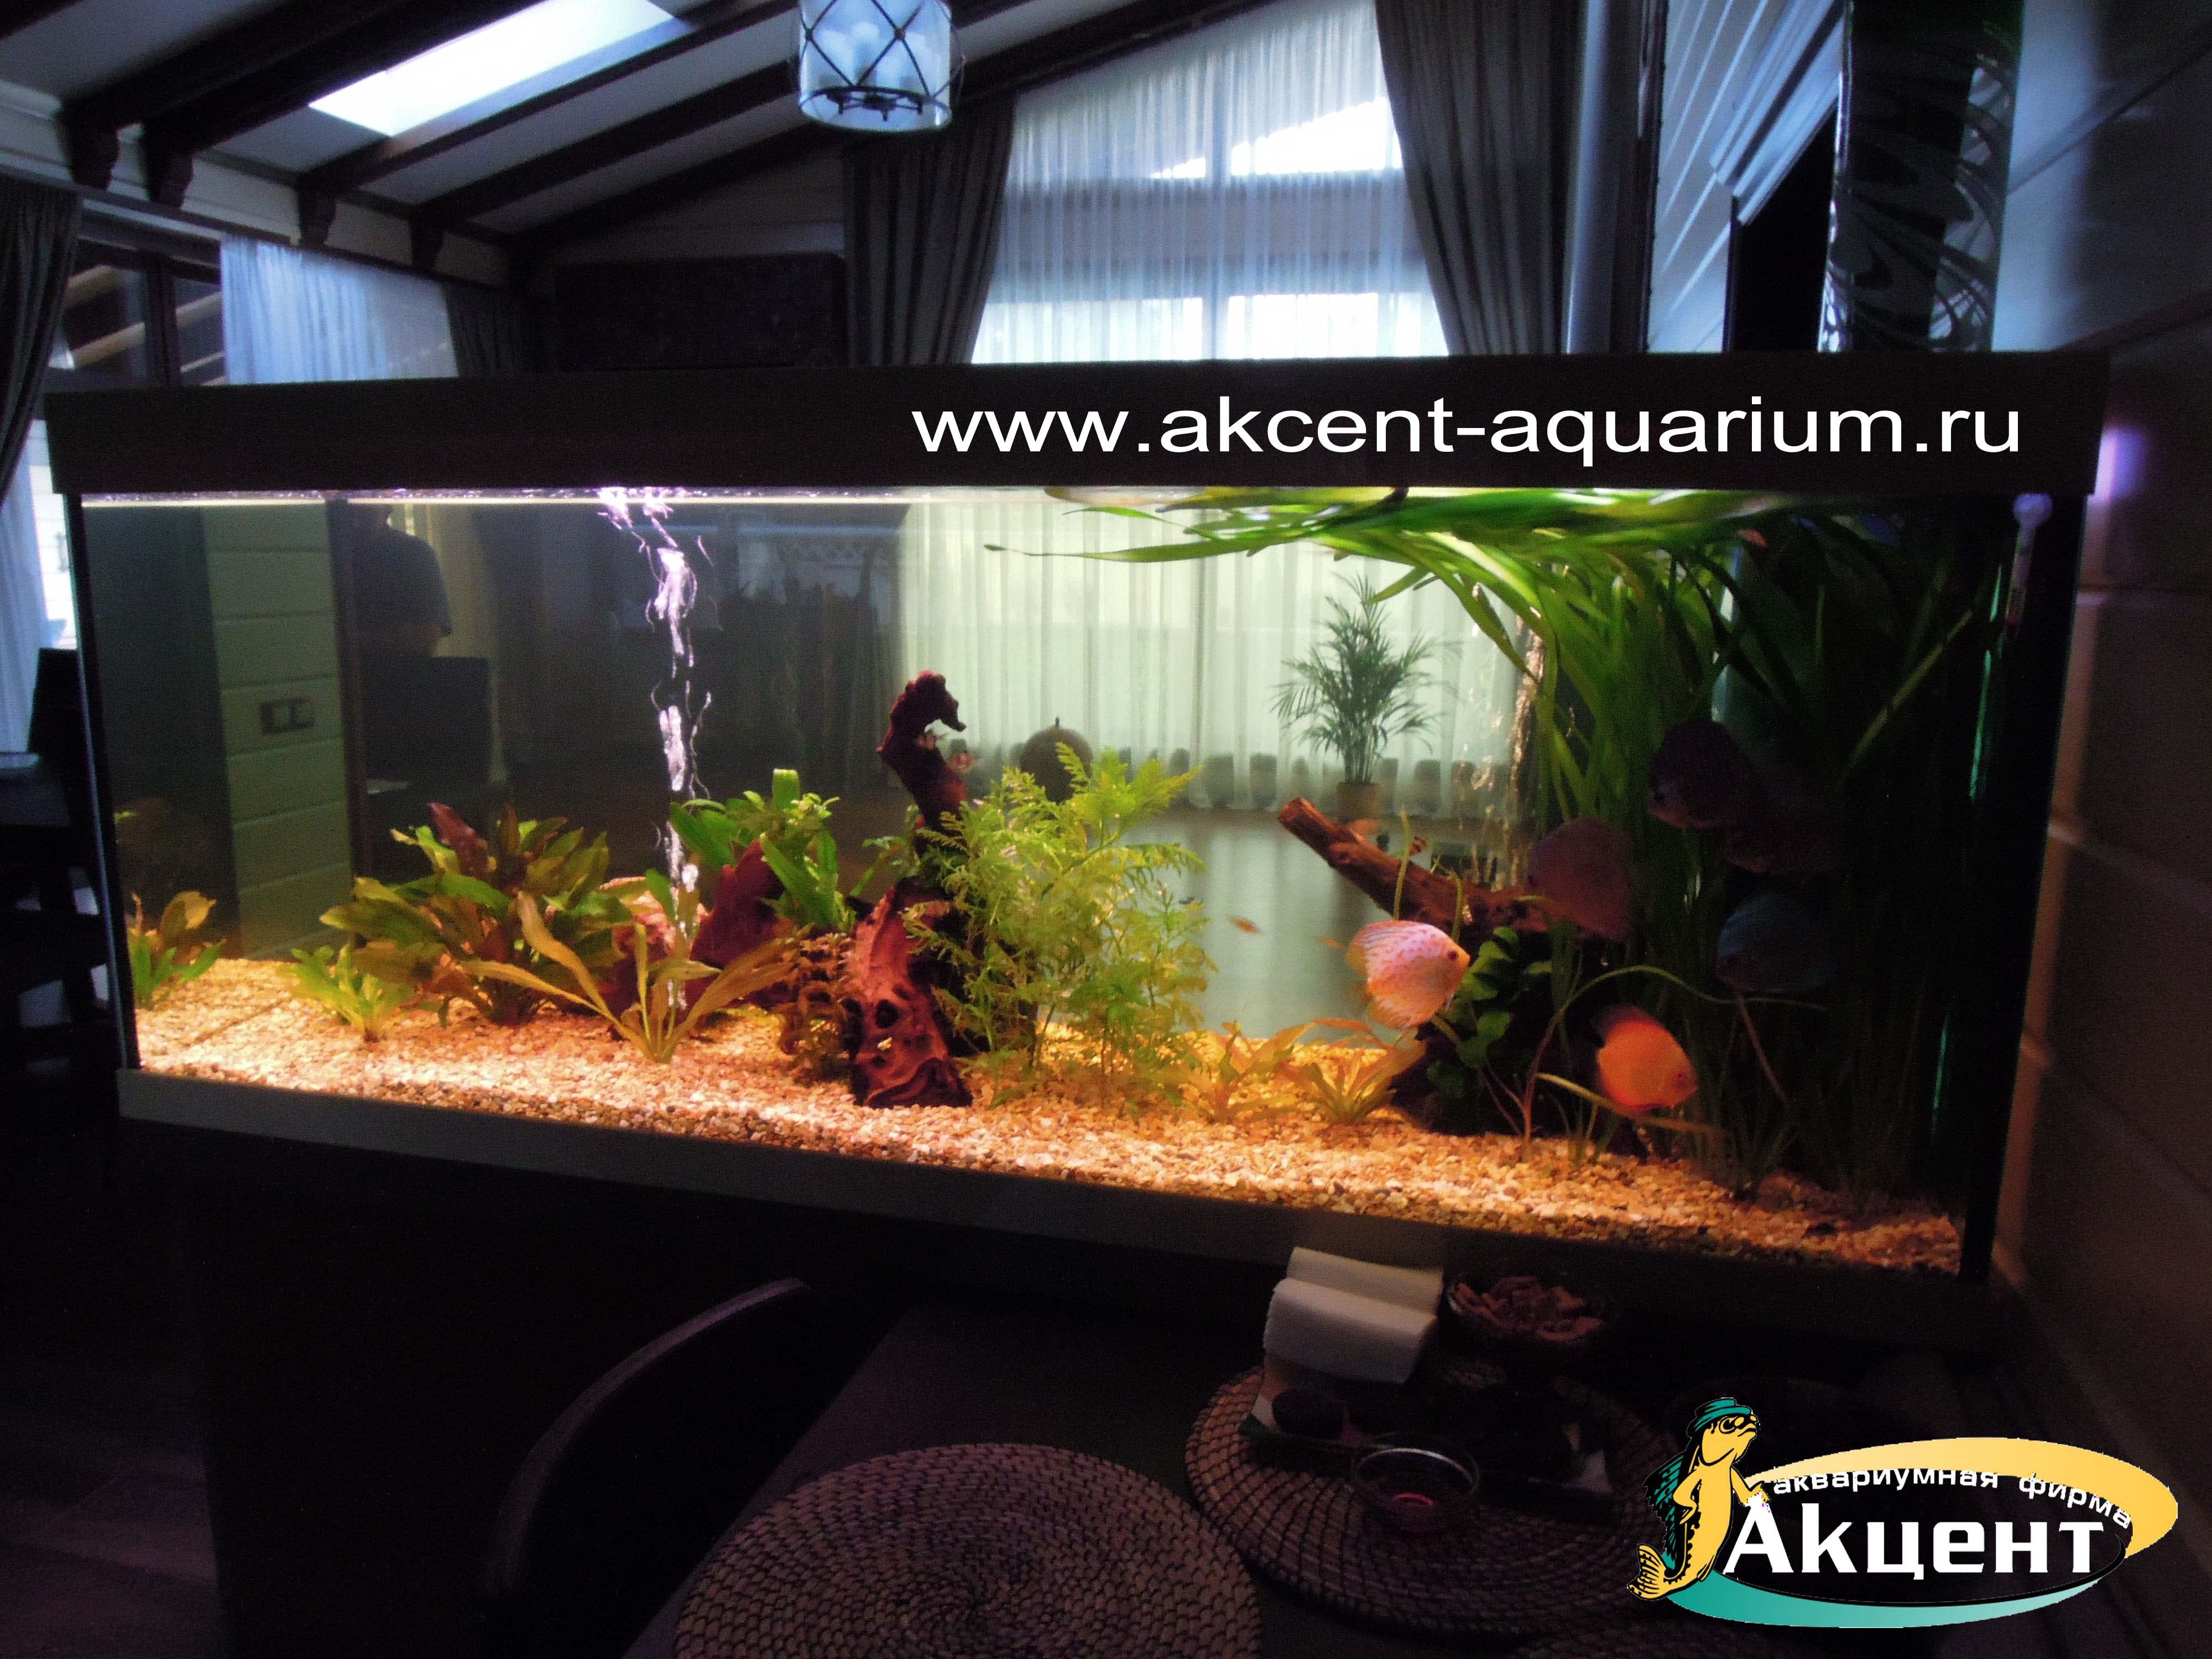 Акцент-аквариум, аквариум просмотровый 600 литров, с живыми растениями